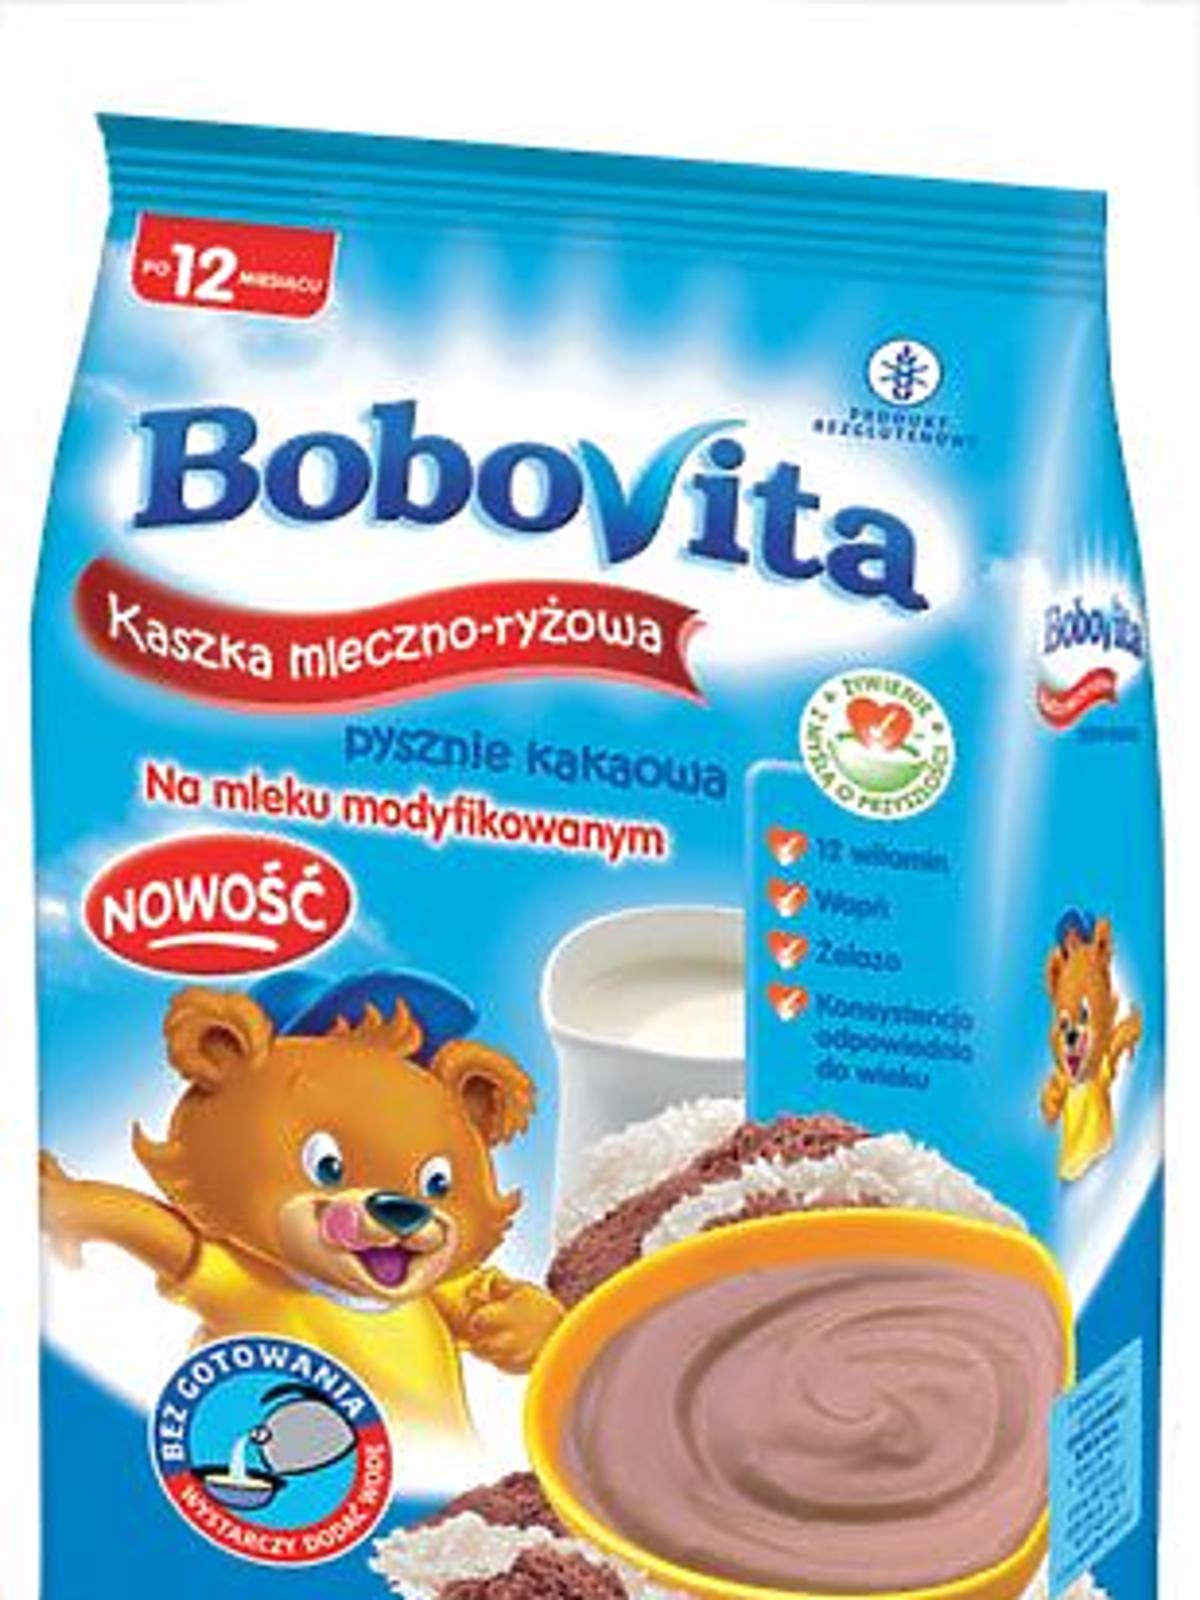 BoboVita-kaszka-ml-ryz-kaka.jpg